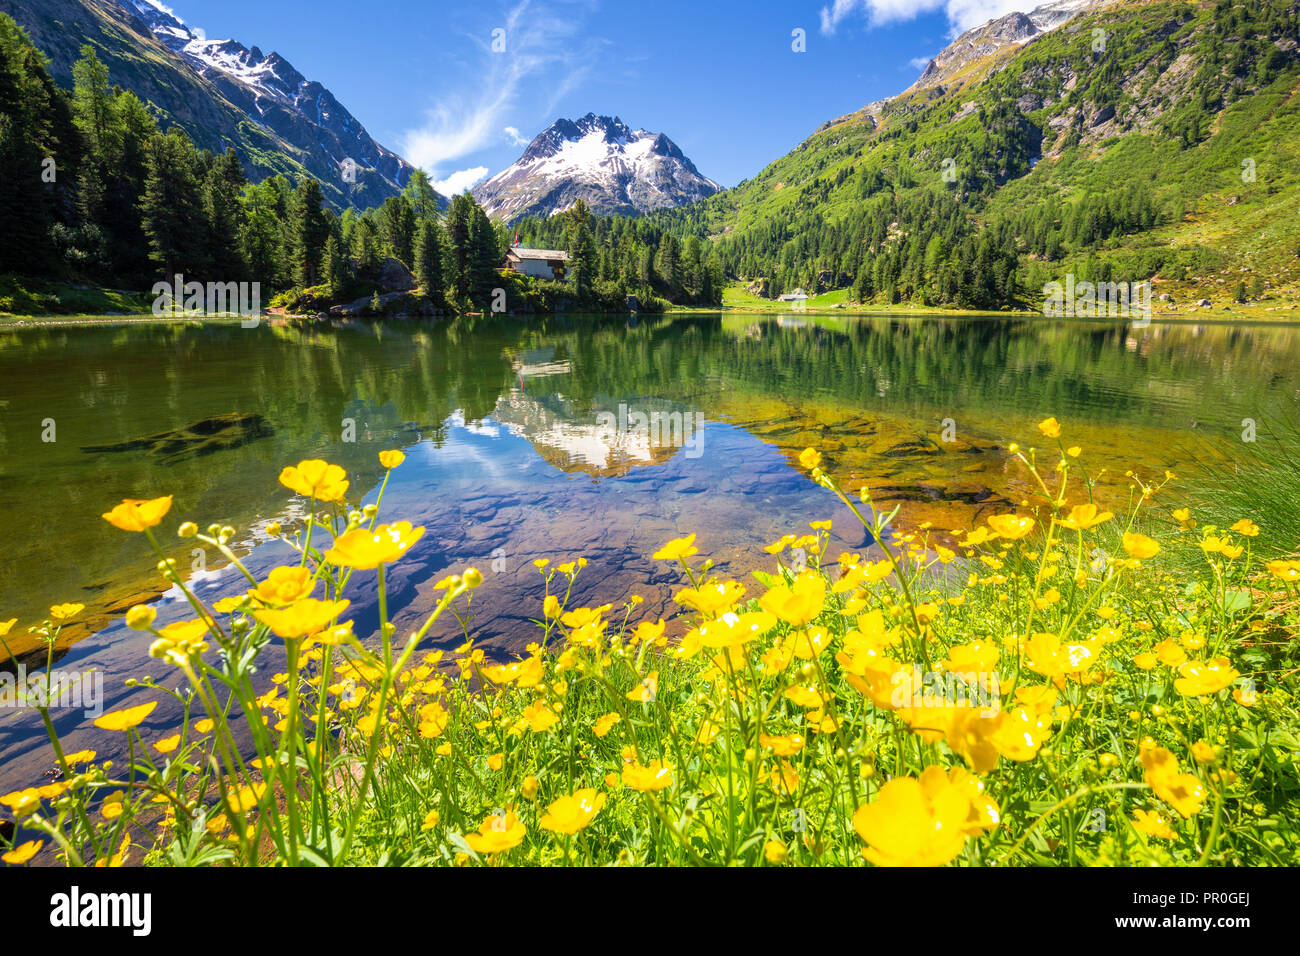 Sommer Blumen am See Cavloc, Forno Tal, Malojapass, Engadin, Graubünden,  Schweiz, Europa Stockfotografie - Alamy